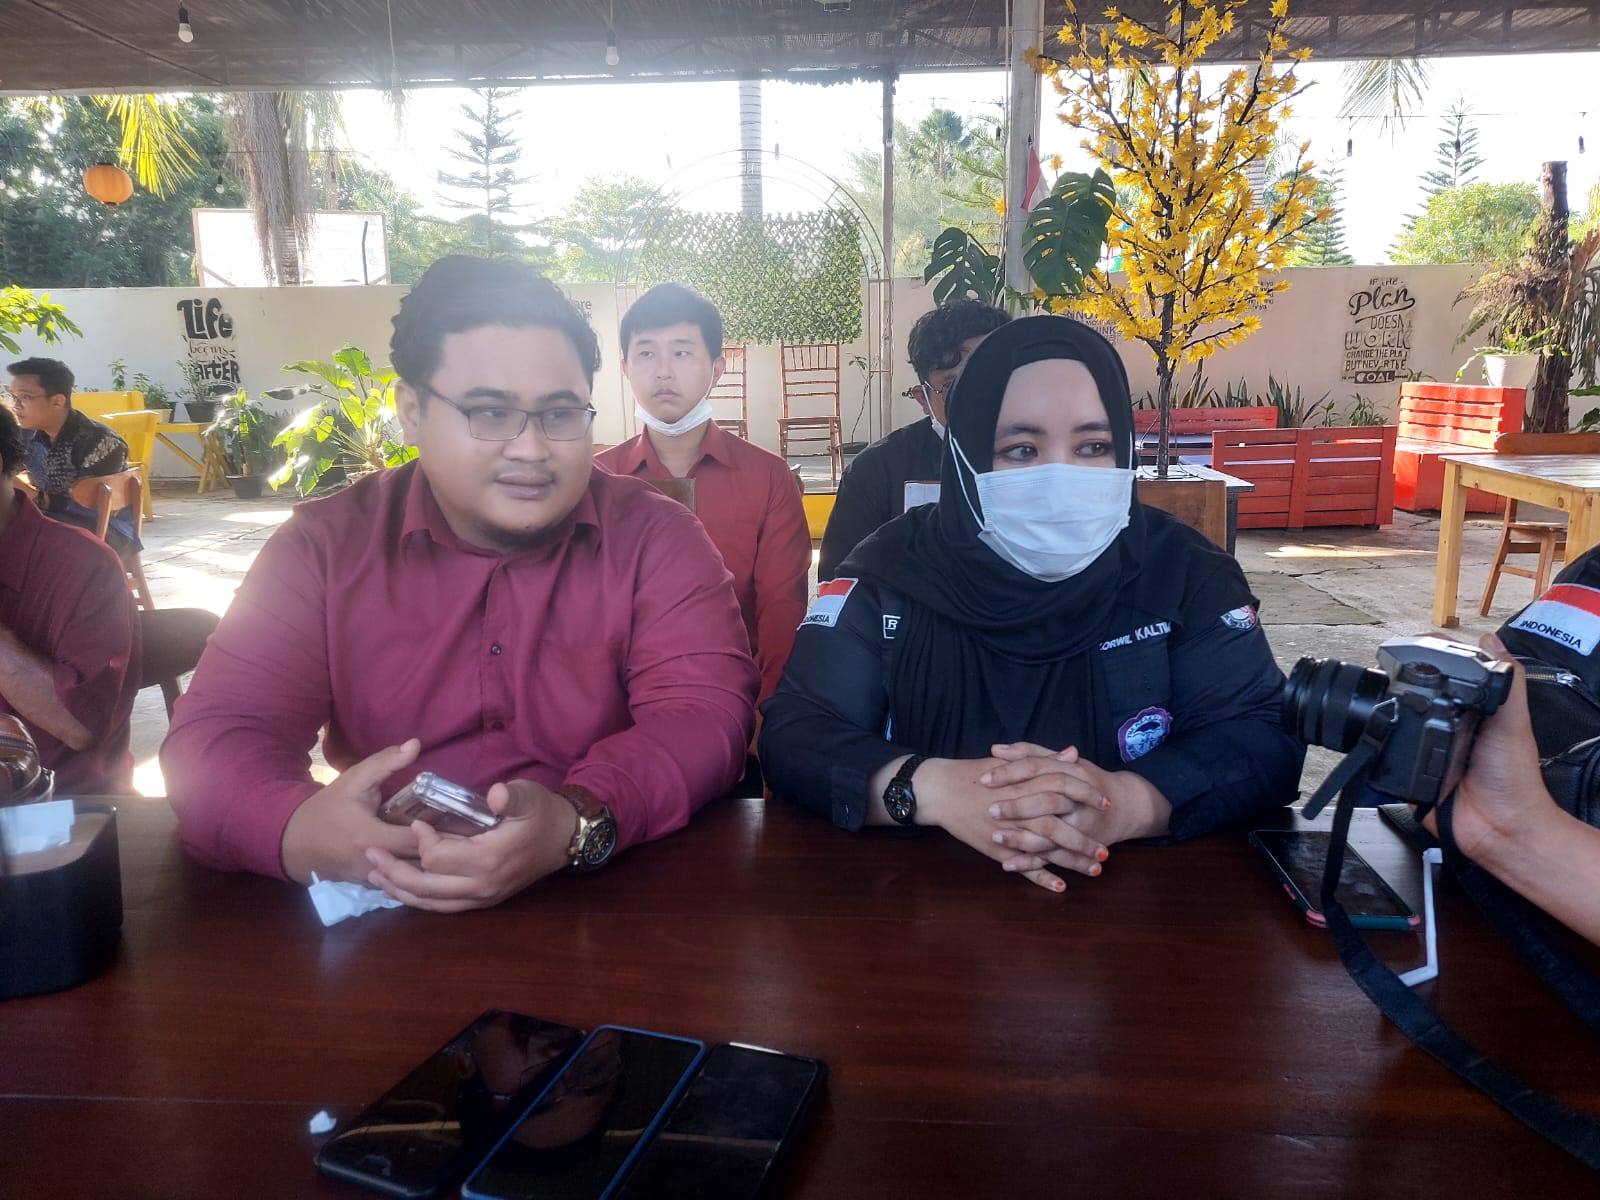 Bersama Istrinya, Terduga Pelaku Lakukan Tindak Asusila Terhadap Dua Anak Dibawah Umur di Samboja